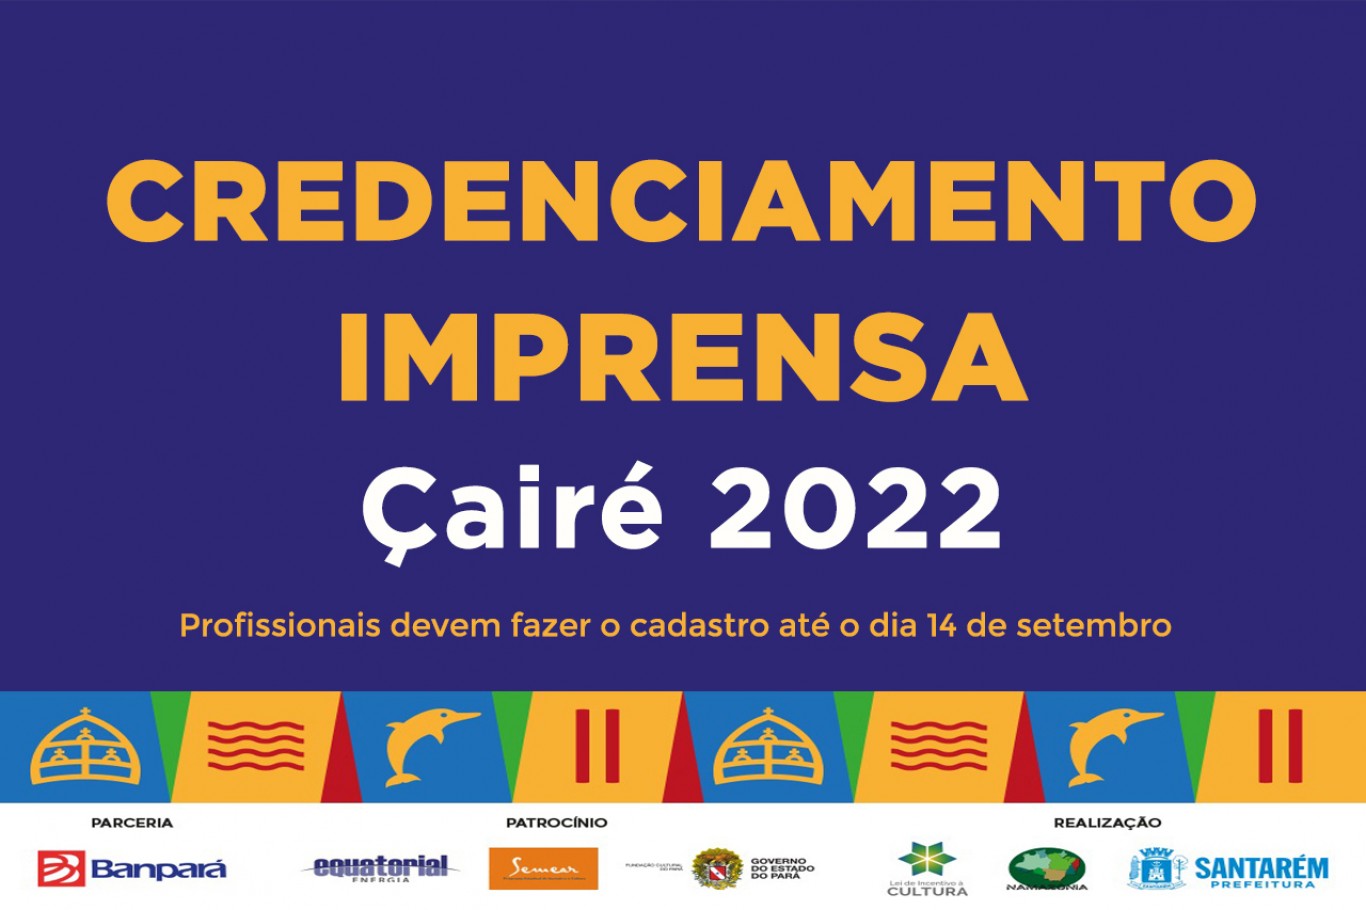 Credenciamento da imprensa para cobertura do Çairé 2022 inicia nesta segunda-feira, 15